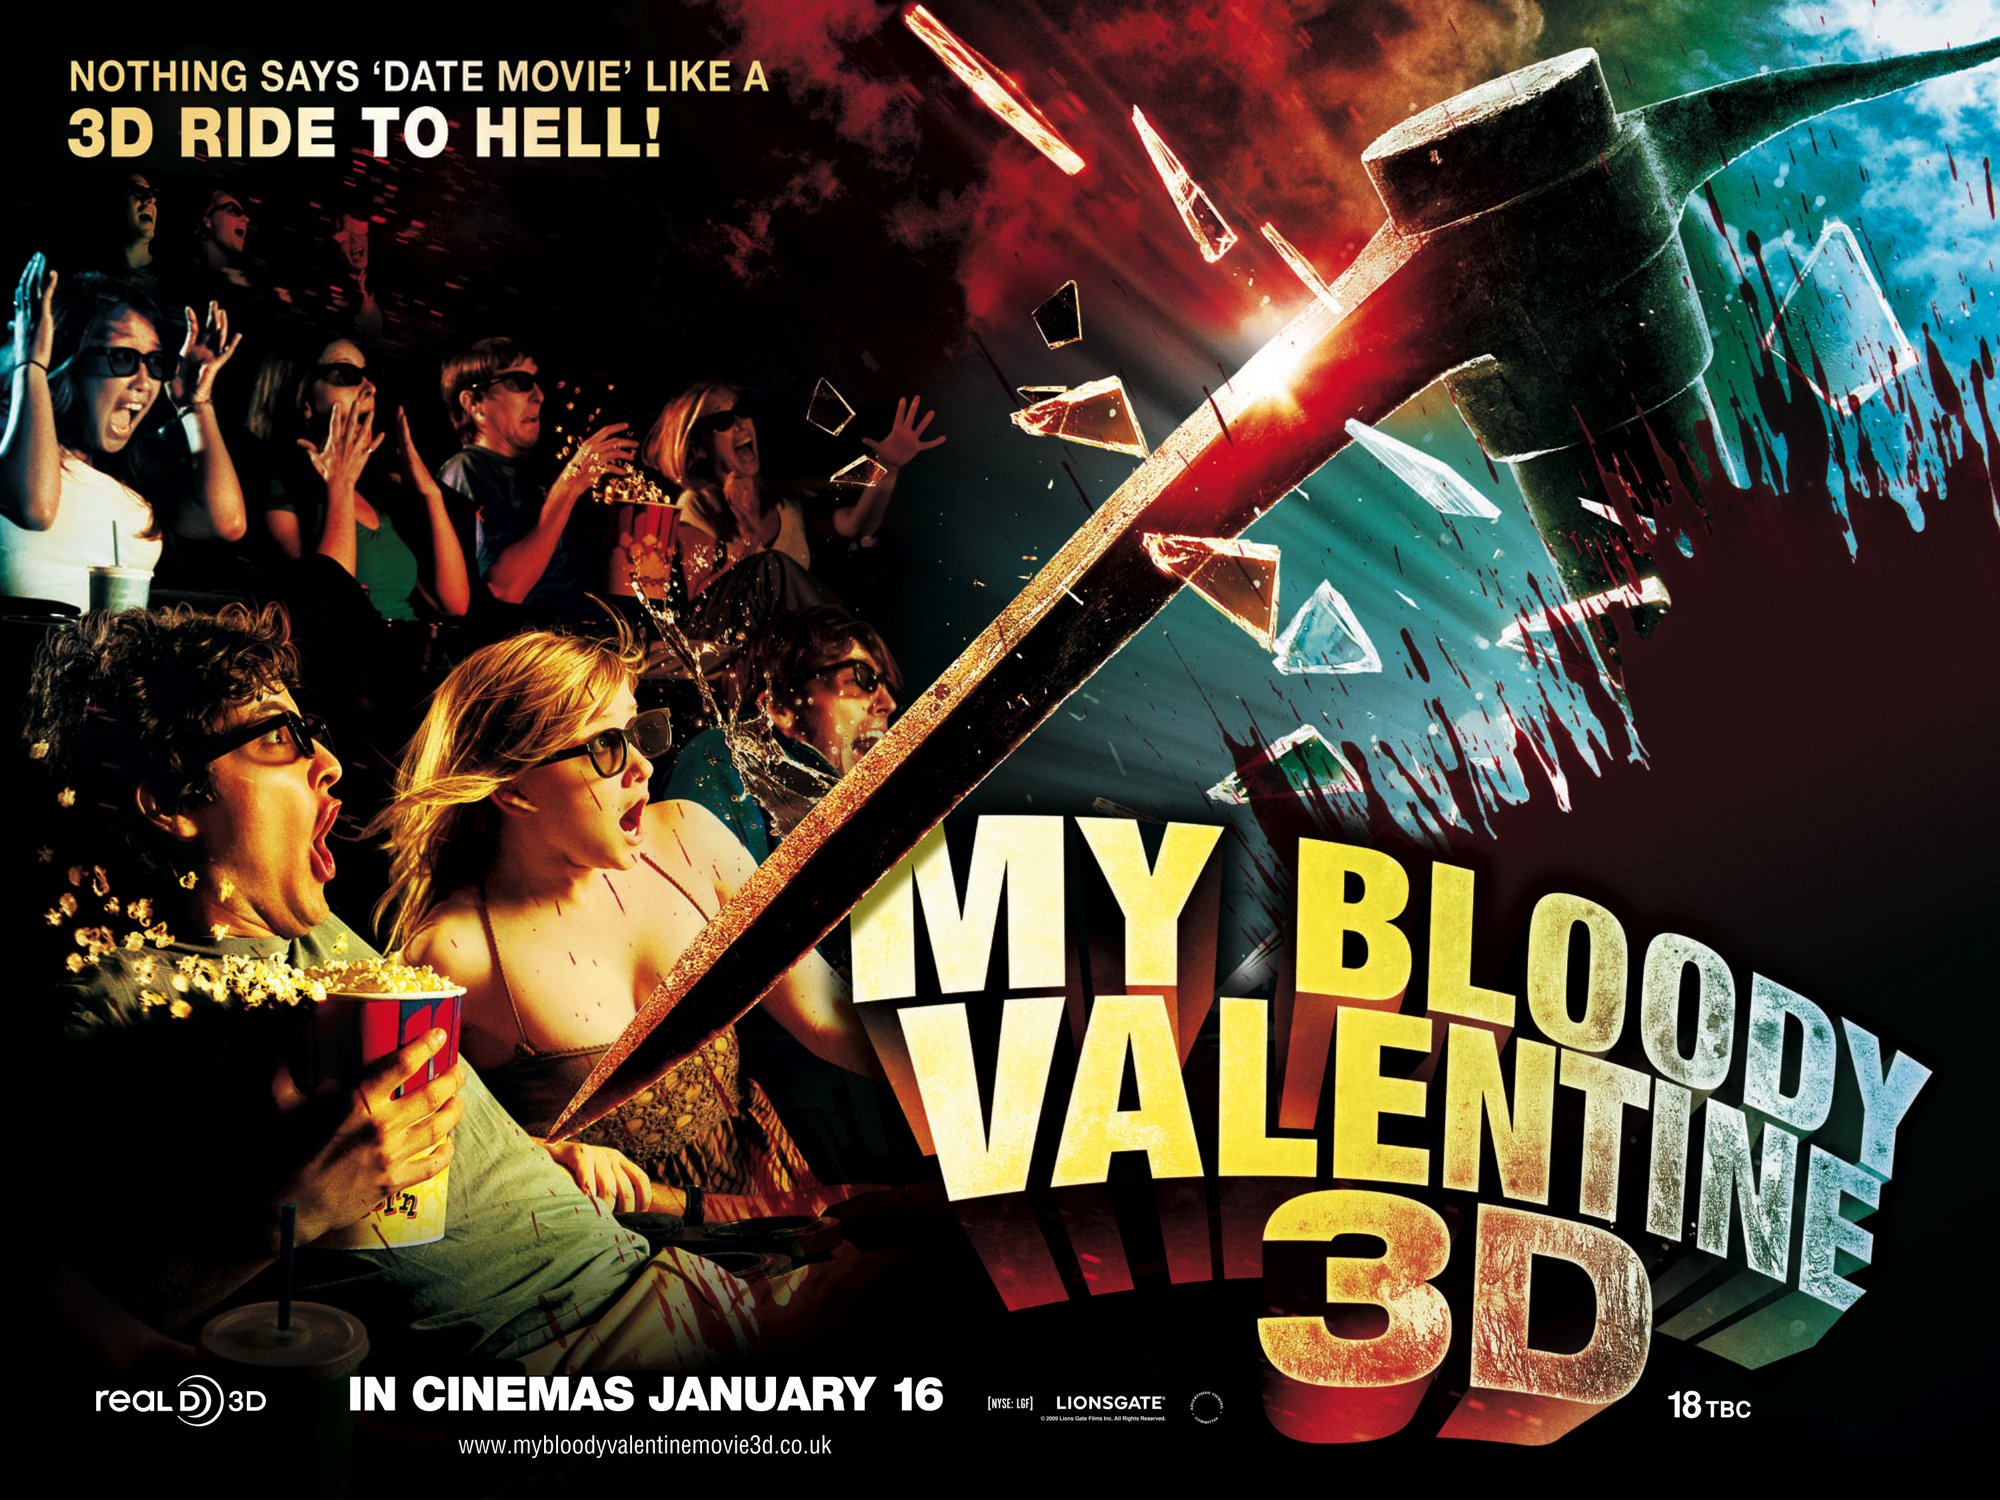 O Horror no Dia dos Namorados: Filmes com temática de São Valentim para ver na semana do feriado